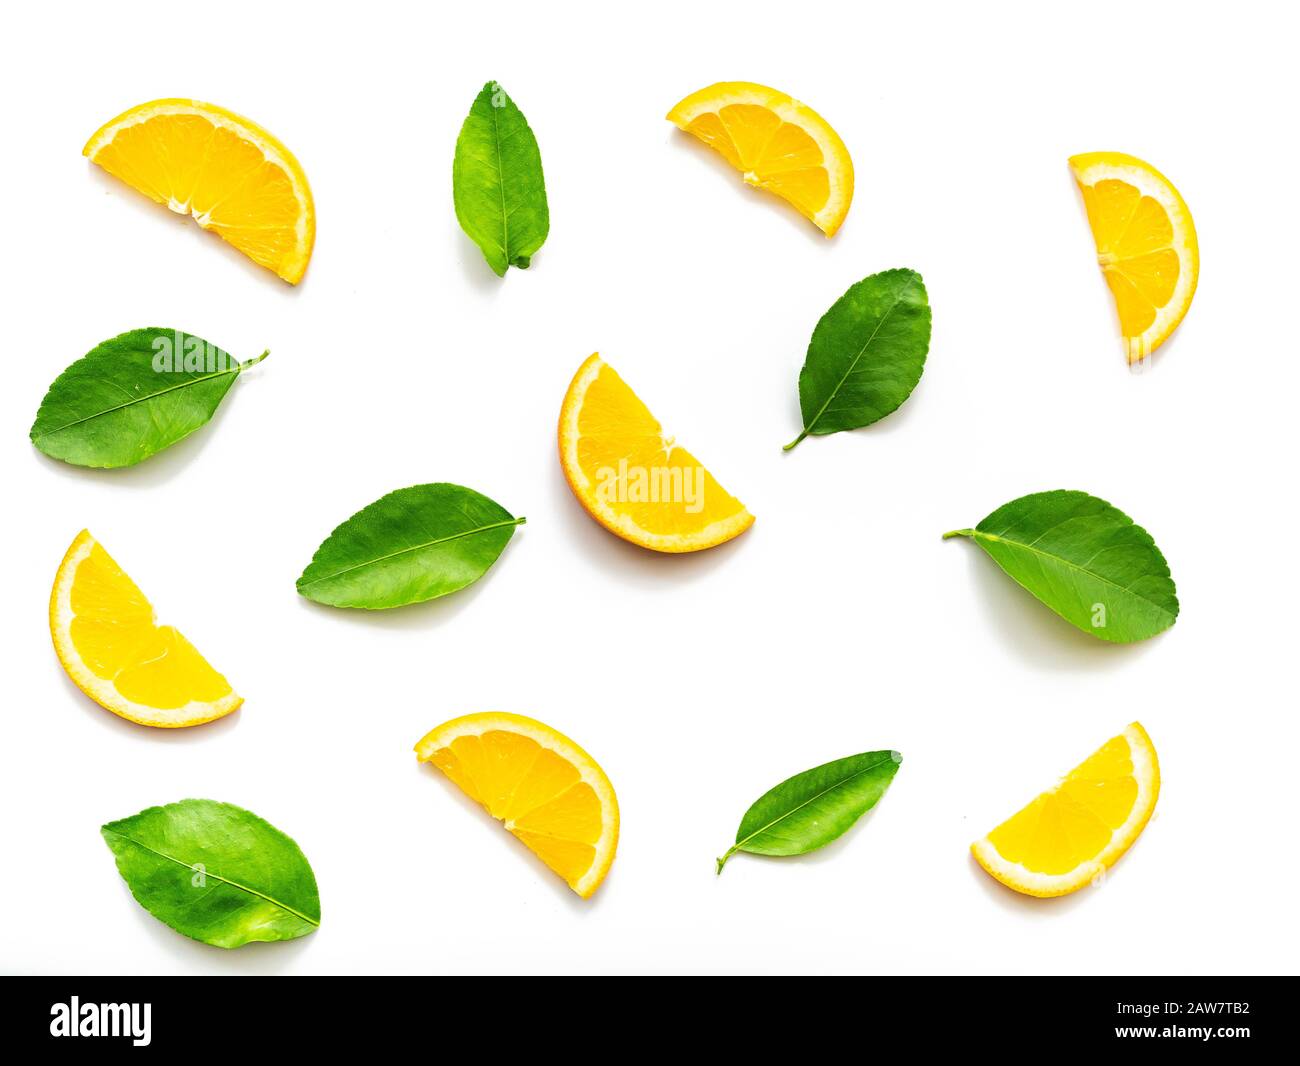 composizione di fette di arancia frutta con foglie verdi isolato su sfondo bianco. vista dall'alto. arance frutta tropicale per sfondo, studio shot Foto Stock